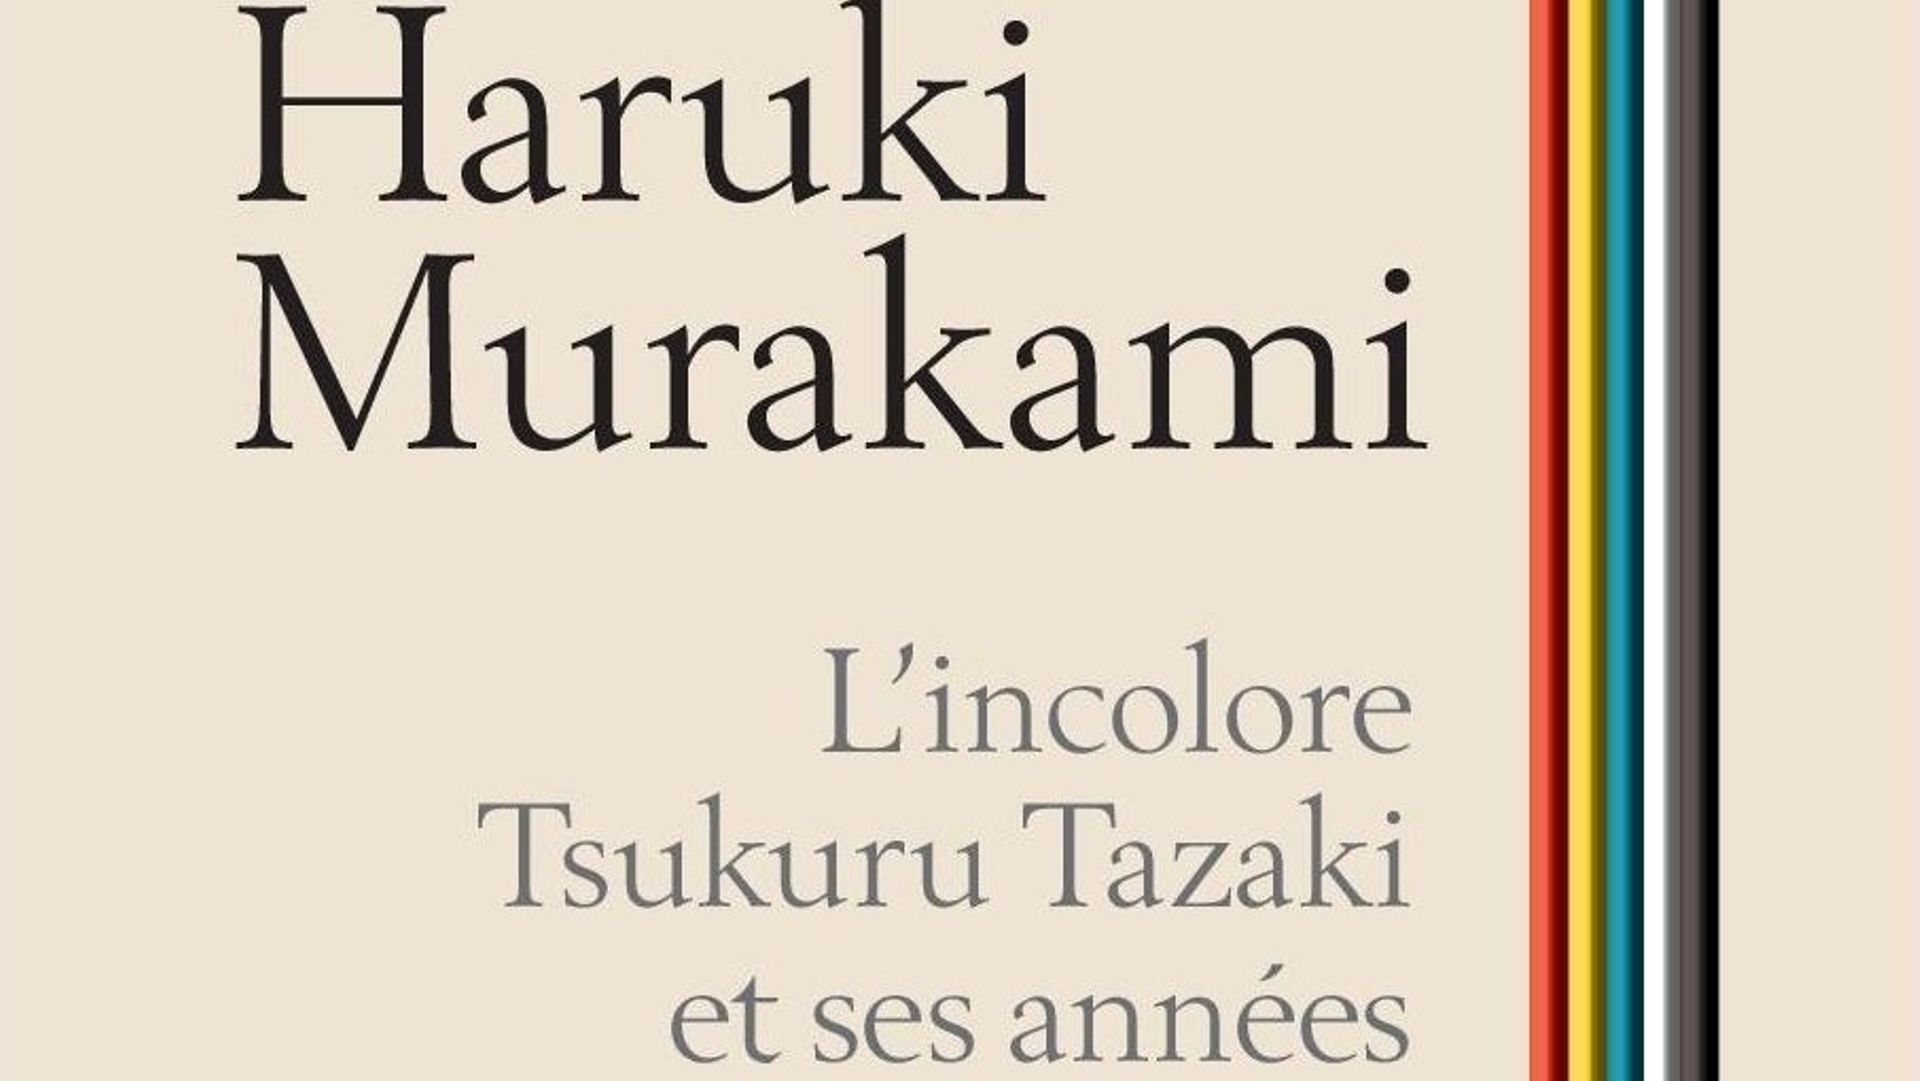 De Haruki Murakami à Craig Davidson, les romans étrangers à ne pas manquer à la rentrée